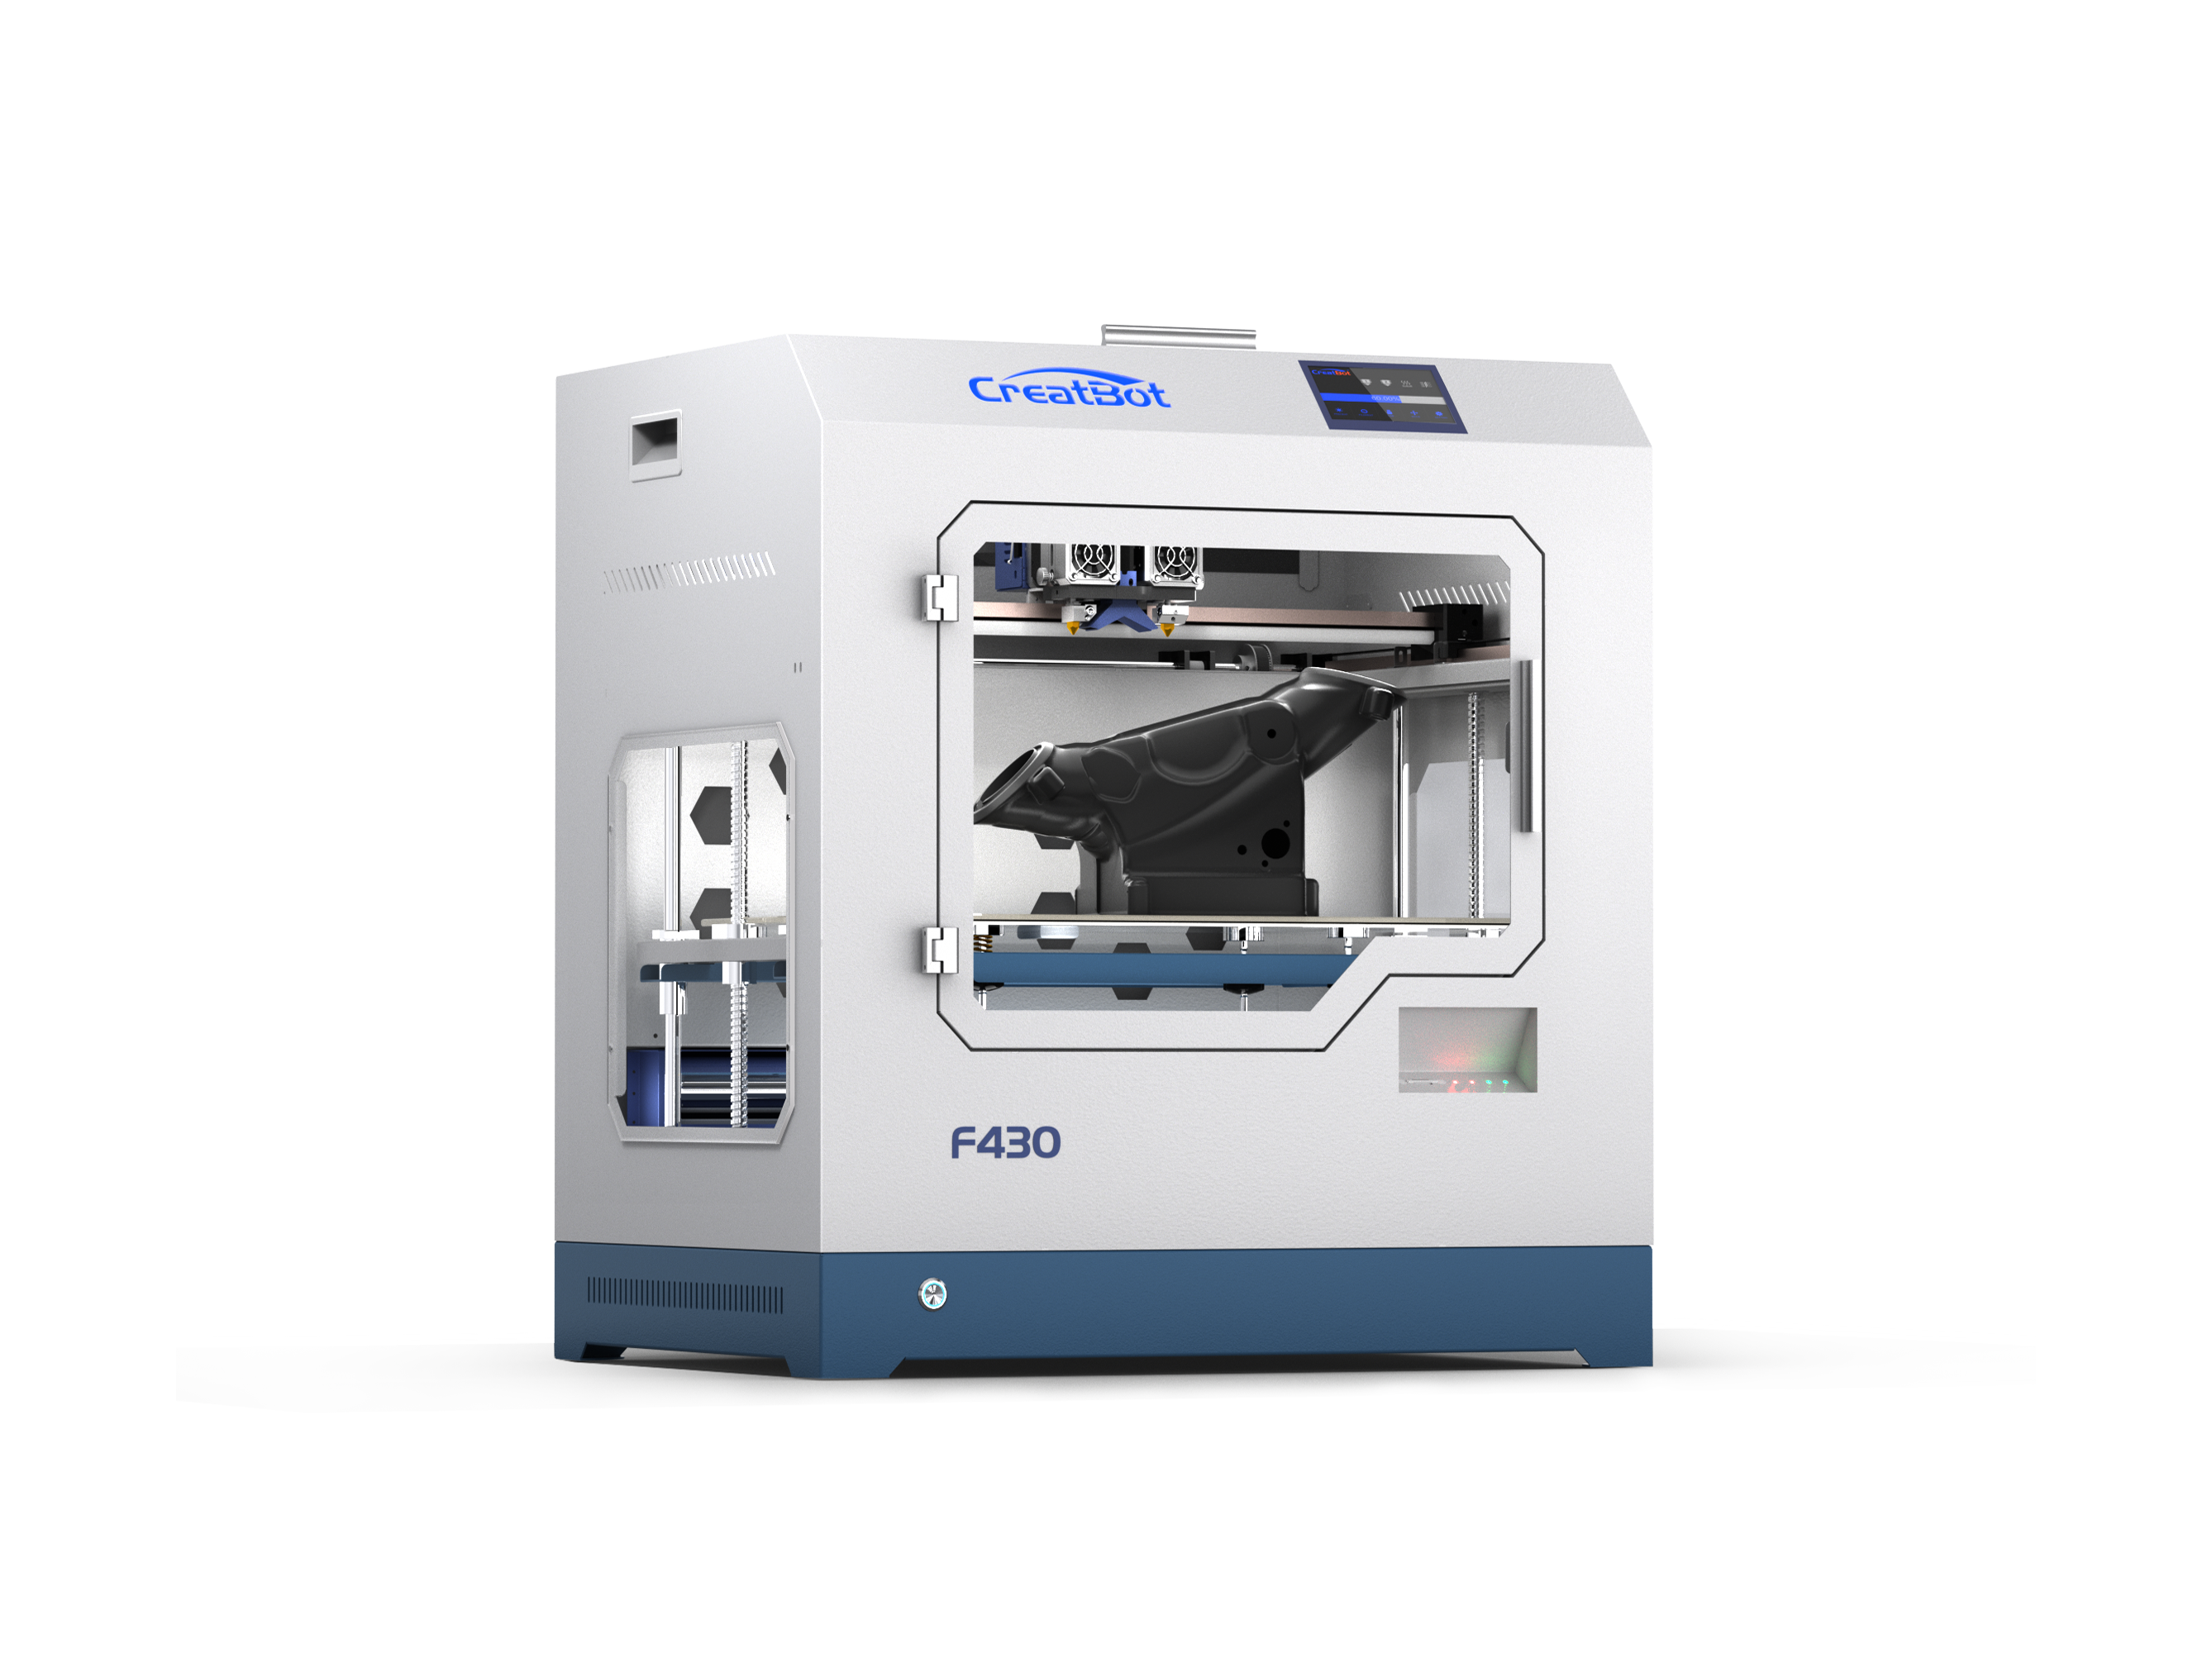 Creatbot F430 - Dual Extruder, 3D printer